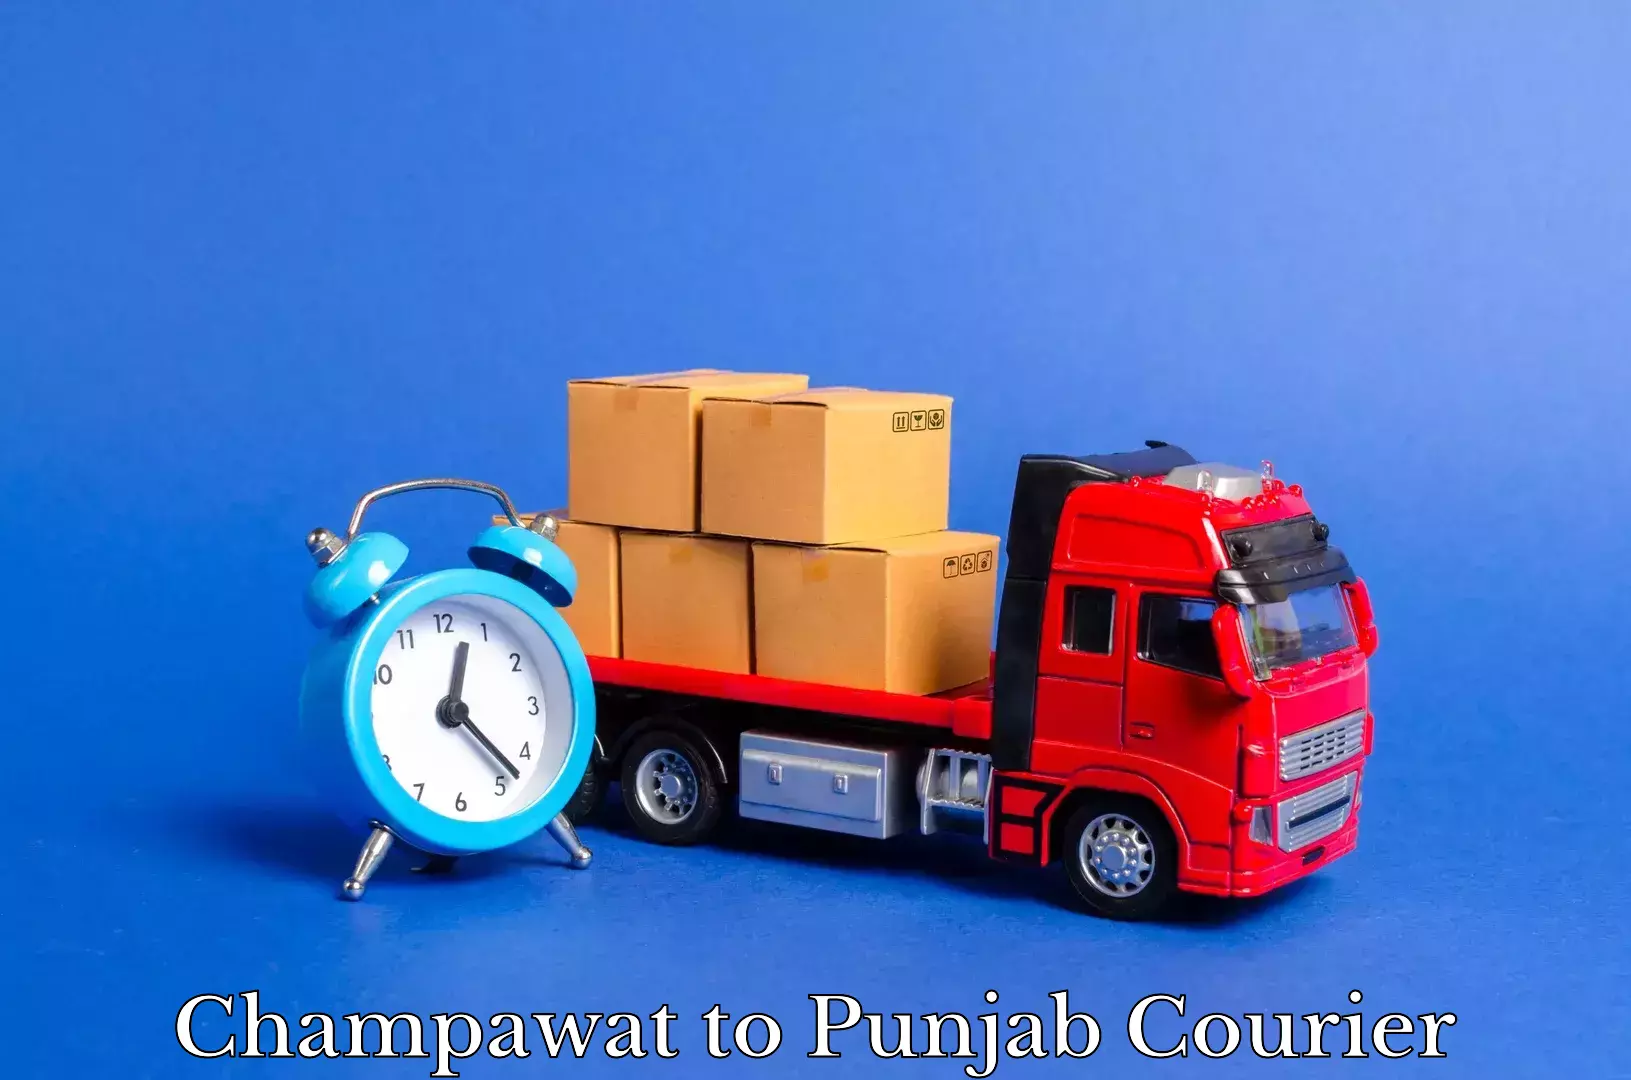 Furniture transport experts Champawat to Dhuri